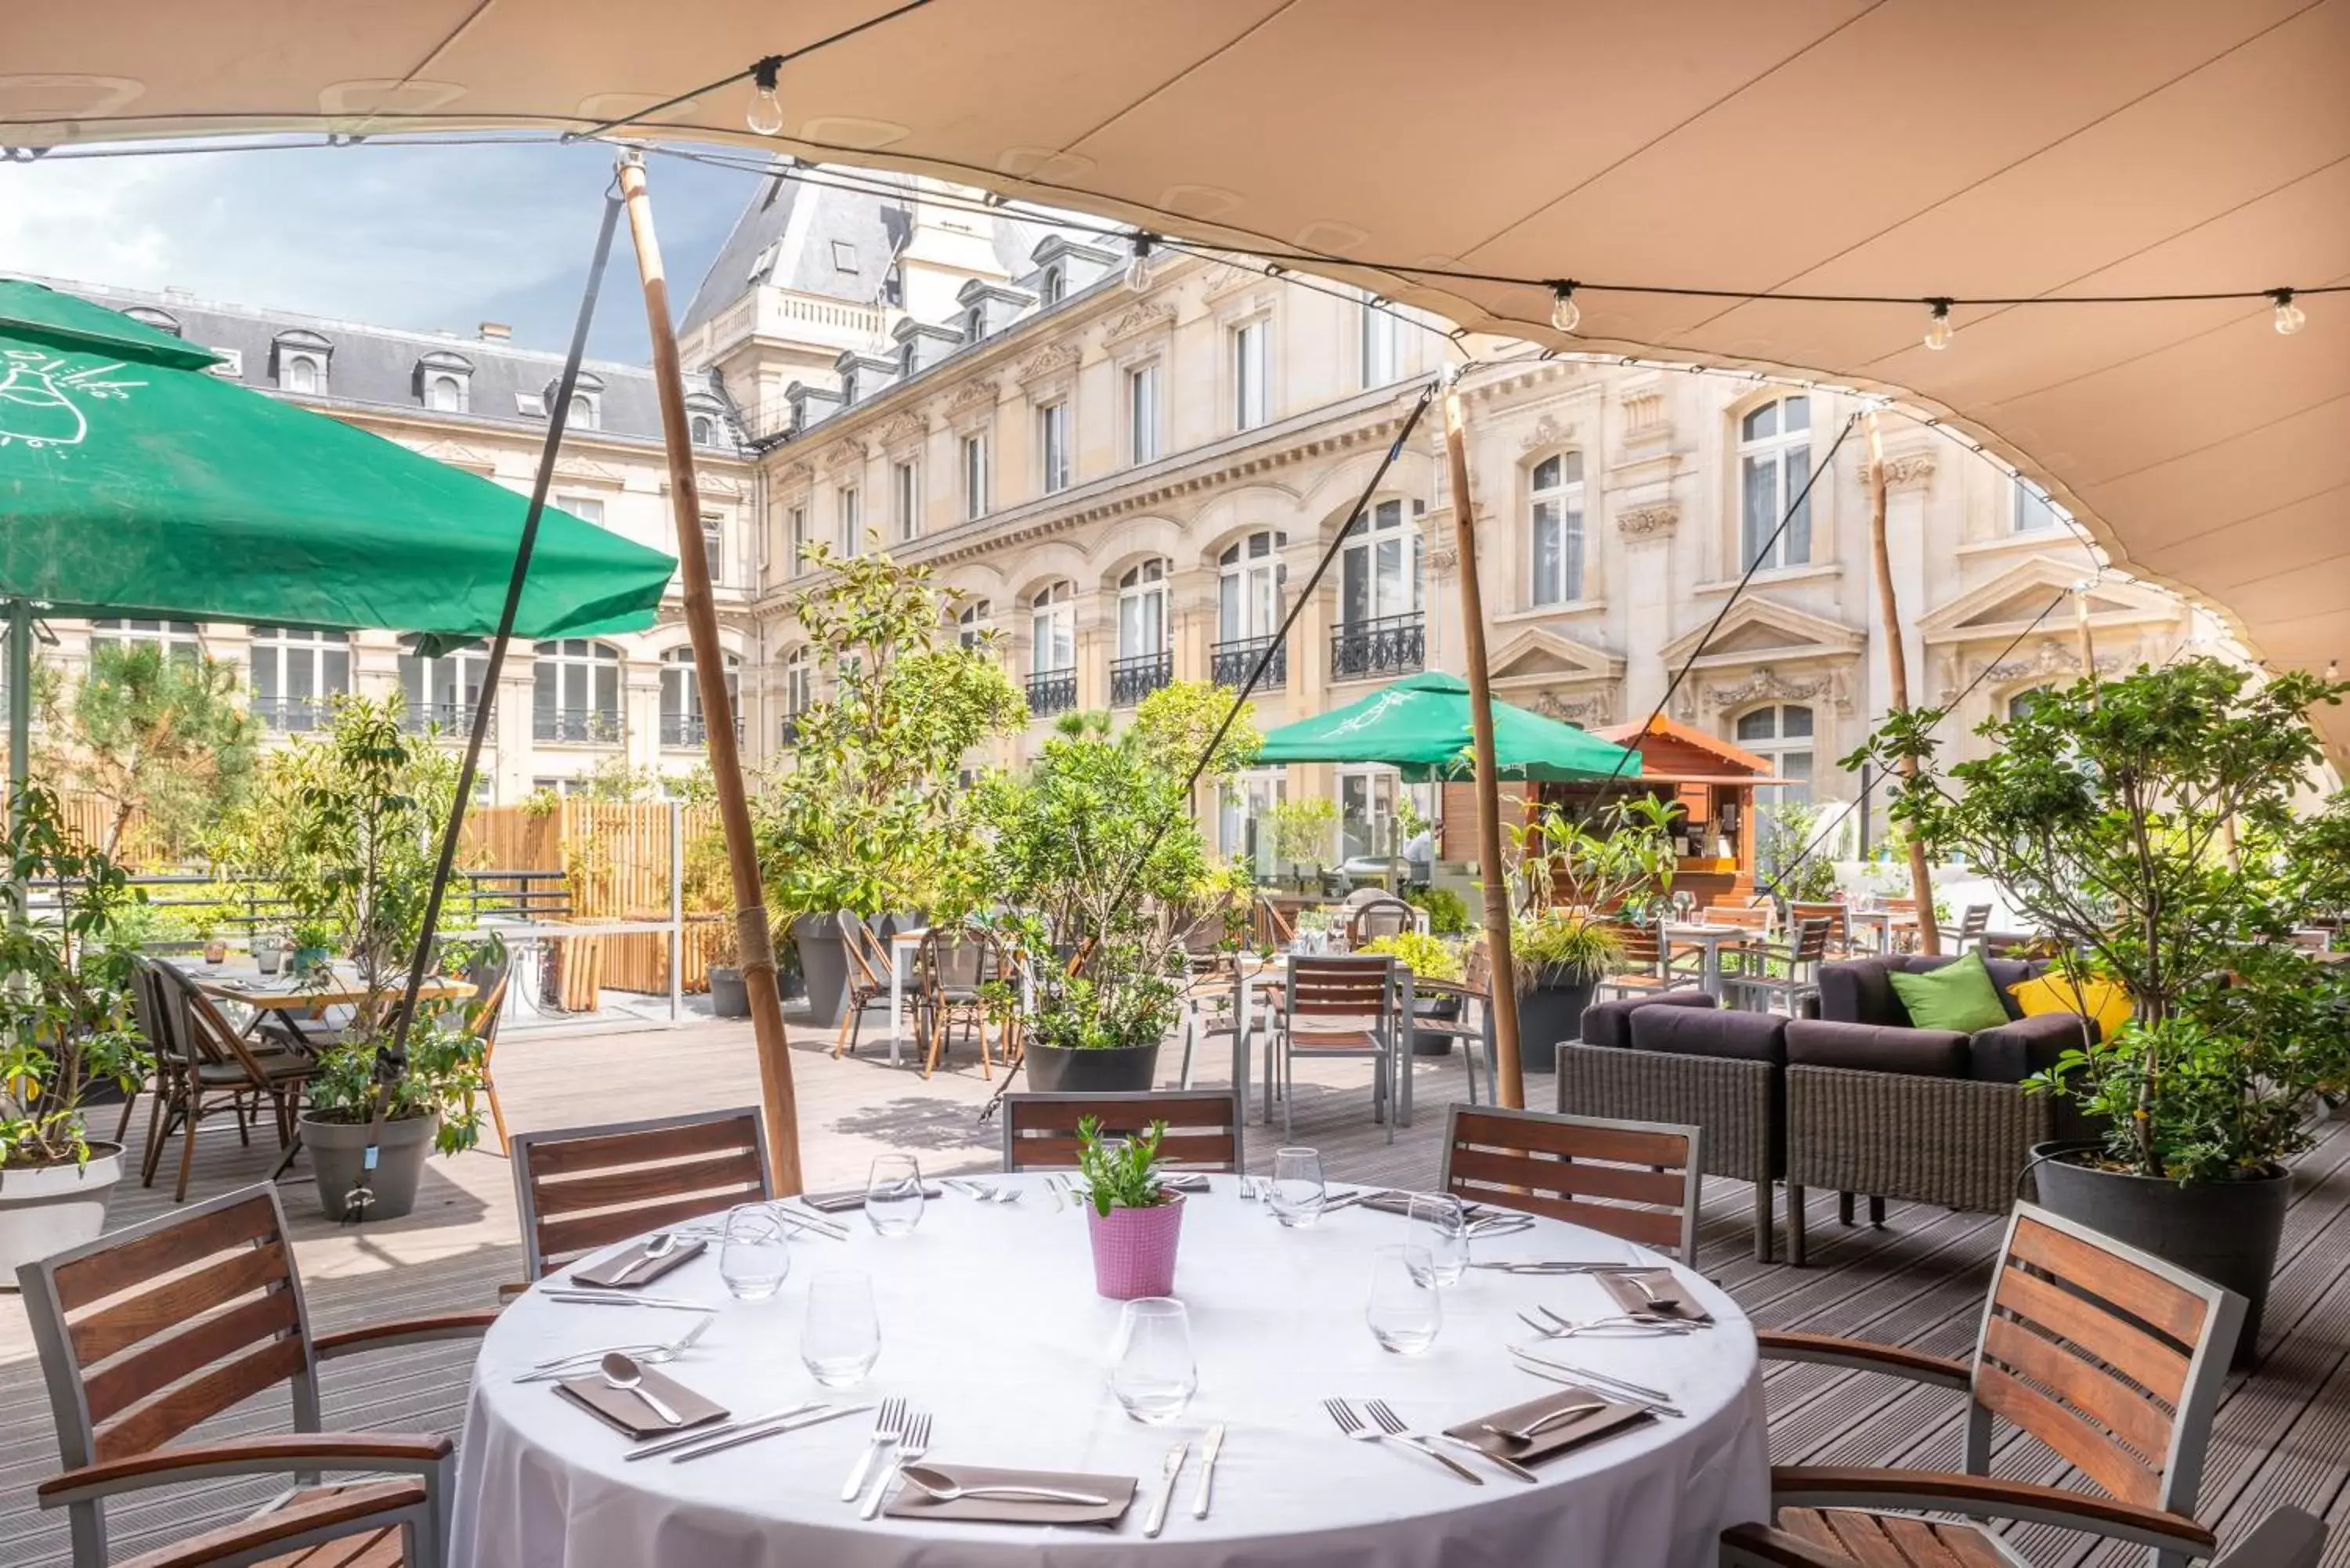 Banquet/Function facilities, Restaurant/Places to Eat in Crowne Plaza Paris République, an IHG Hotel